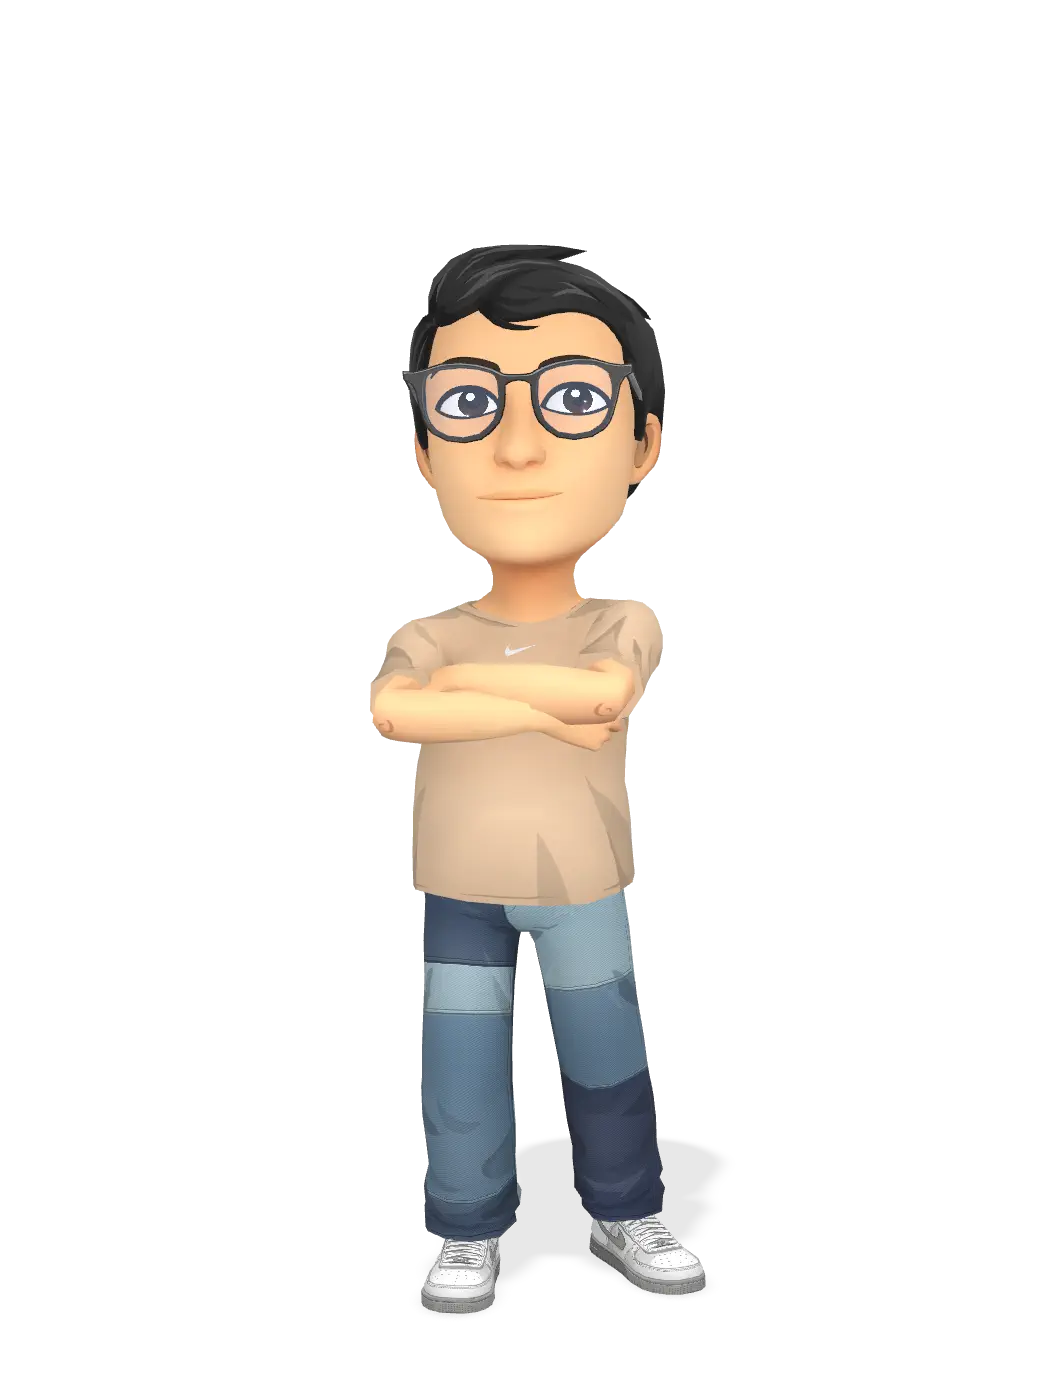 3D Bitmoji for jtatum0510 avatar